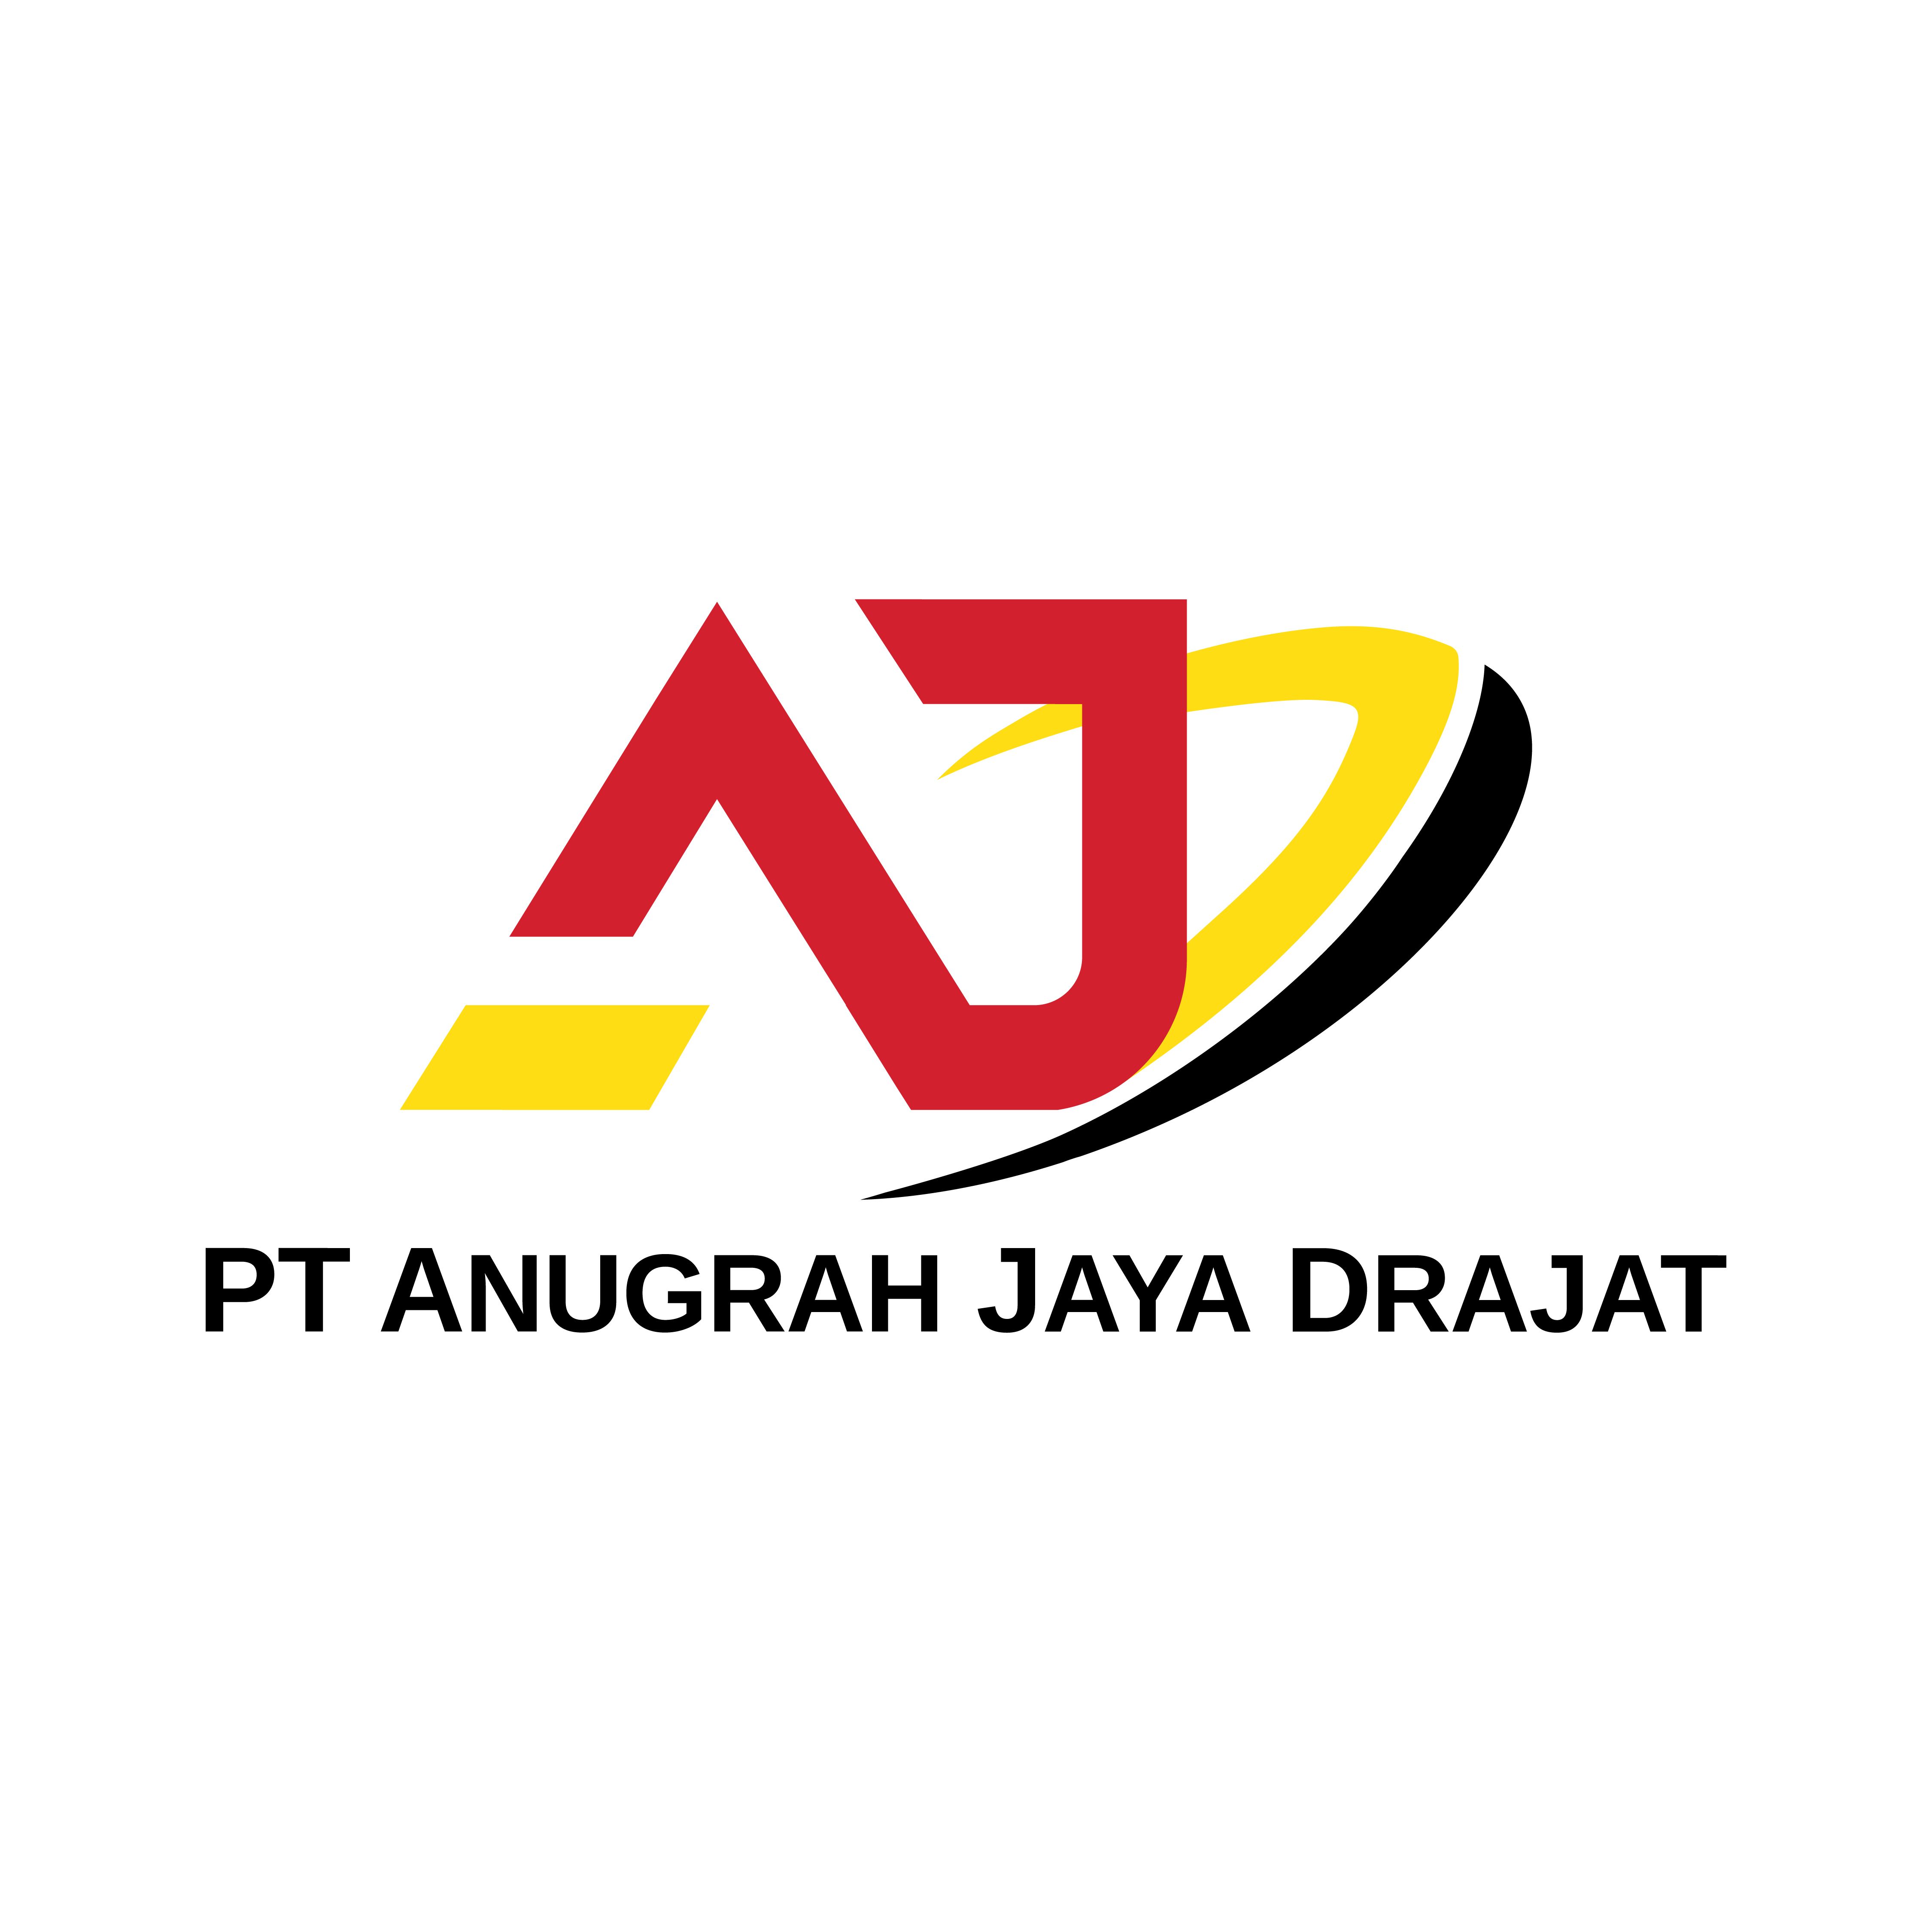 Manager Jobs at PT Anugrah Jaya Drajat, Gresik | Glints